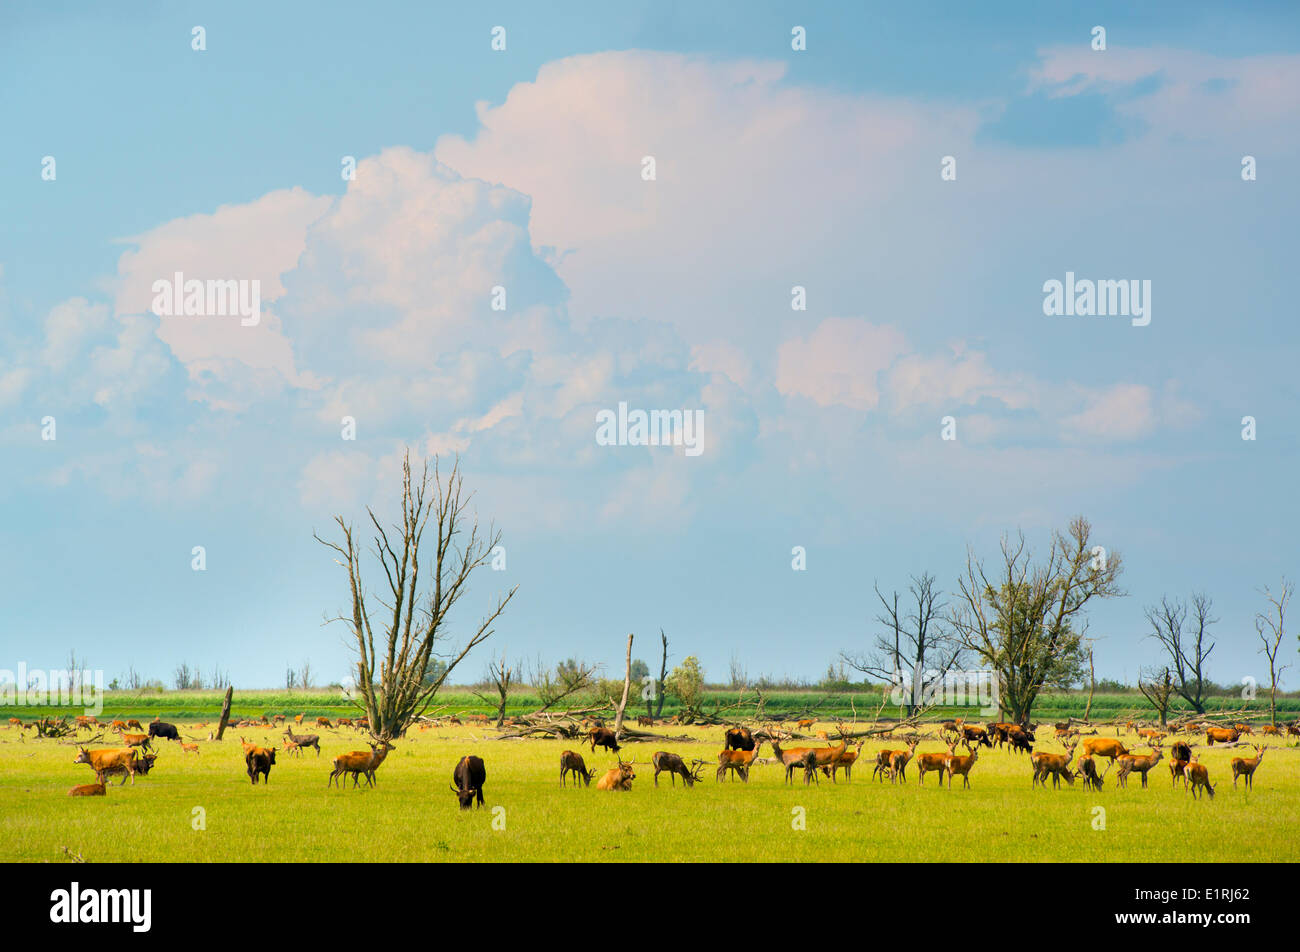 red deer herd in the savanna like landscape of the Oostvaardersplassen naturereserve in the Netherlands; Stock Photo